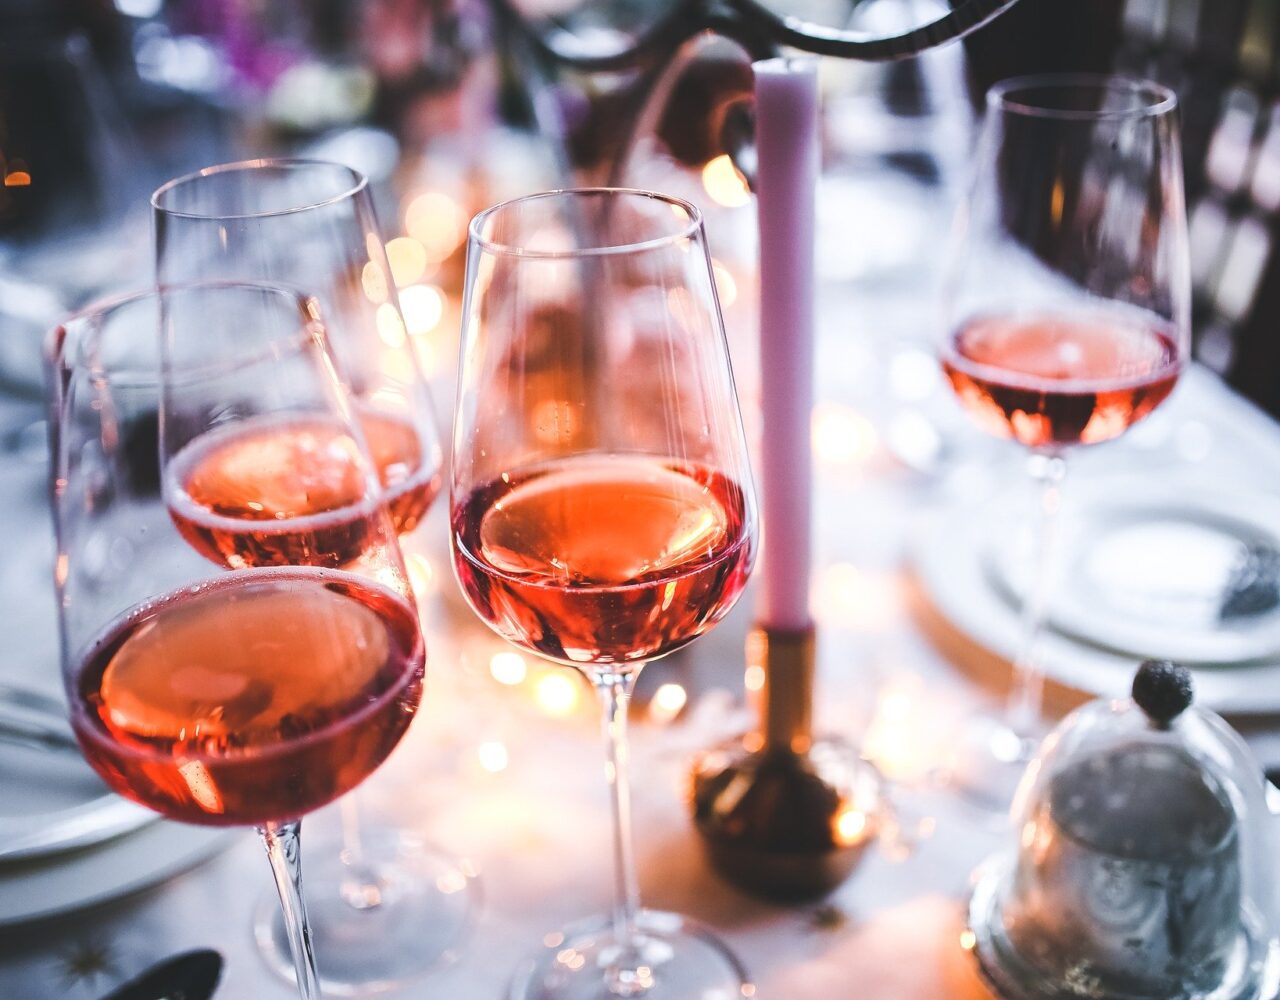 Vinho Rosé: O clássico do Verão